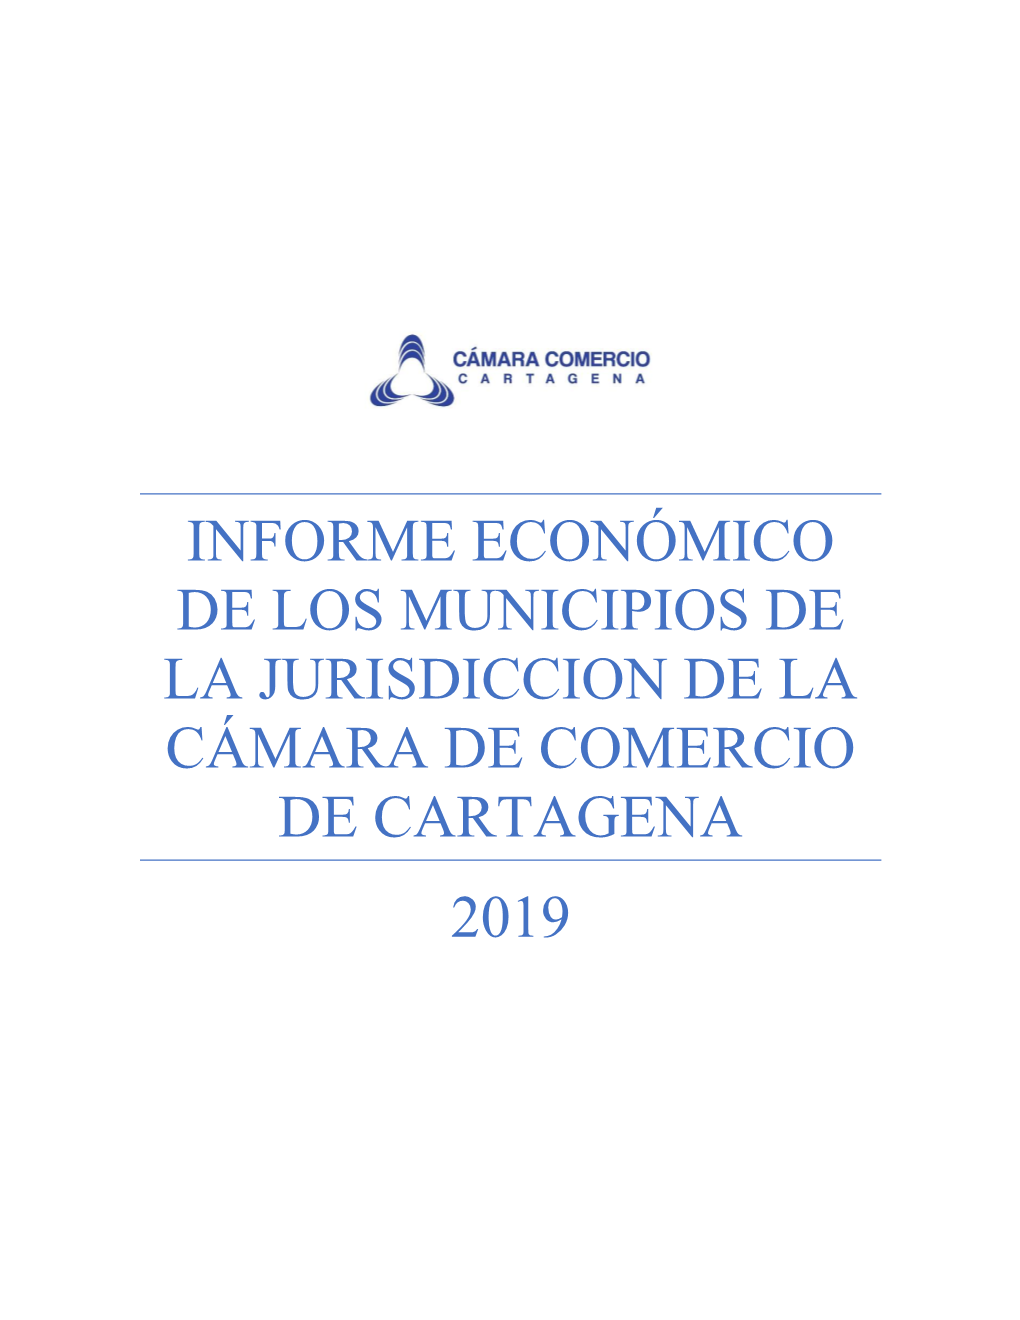 Informe Económico De Los Municipios De La Jurisdiccion De La Cámara De Comercio De Cartagena 2019